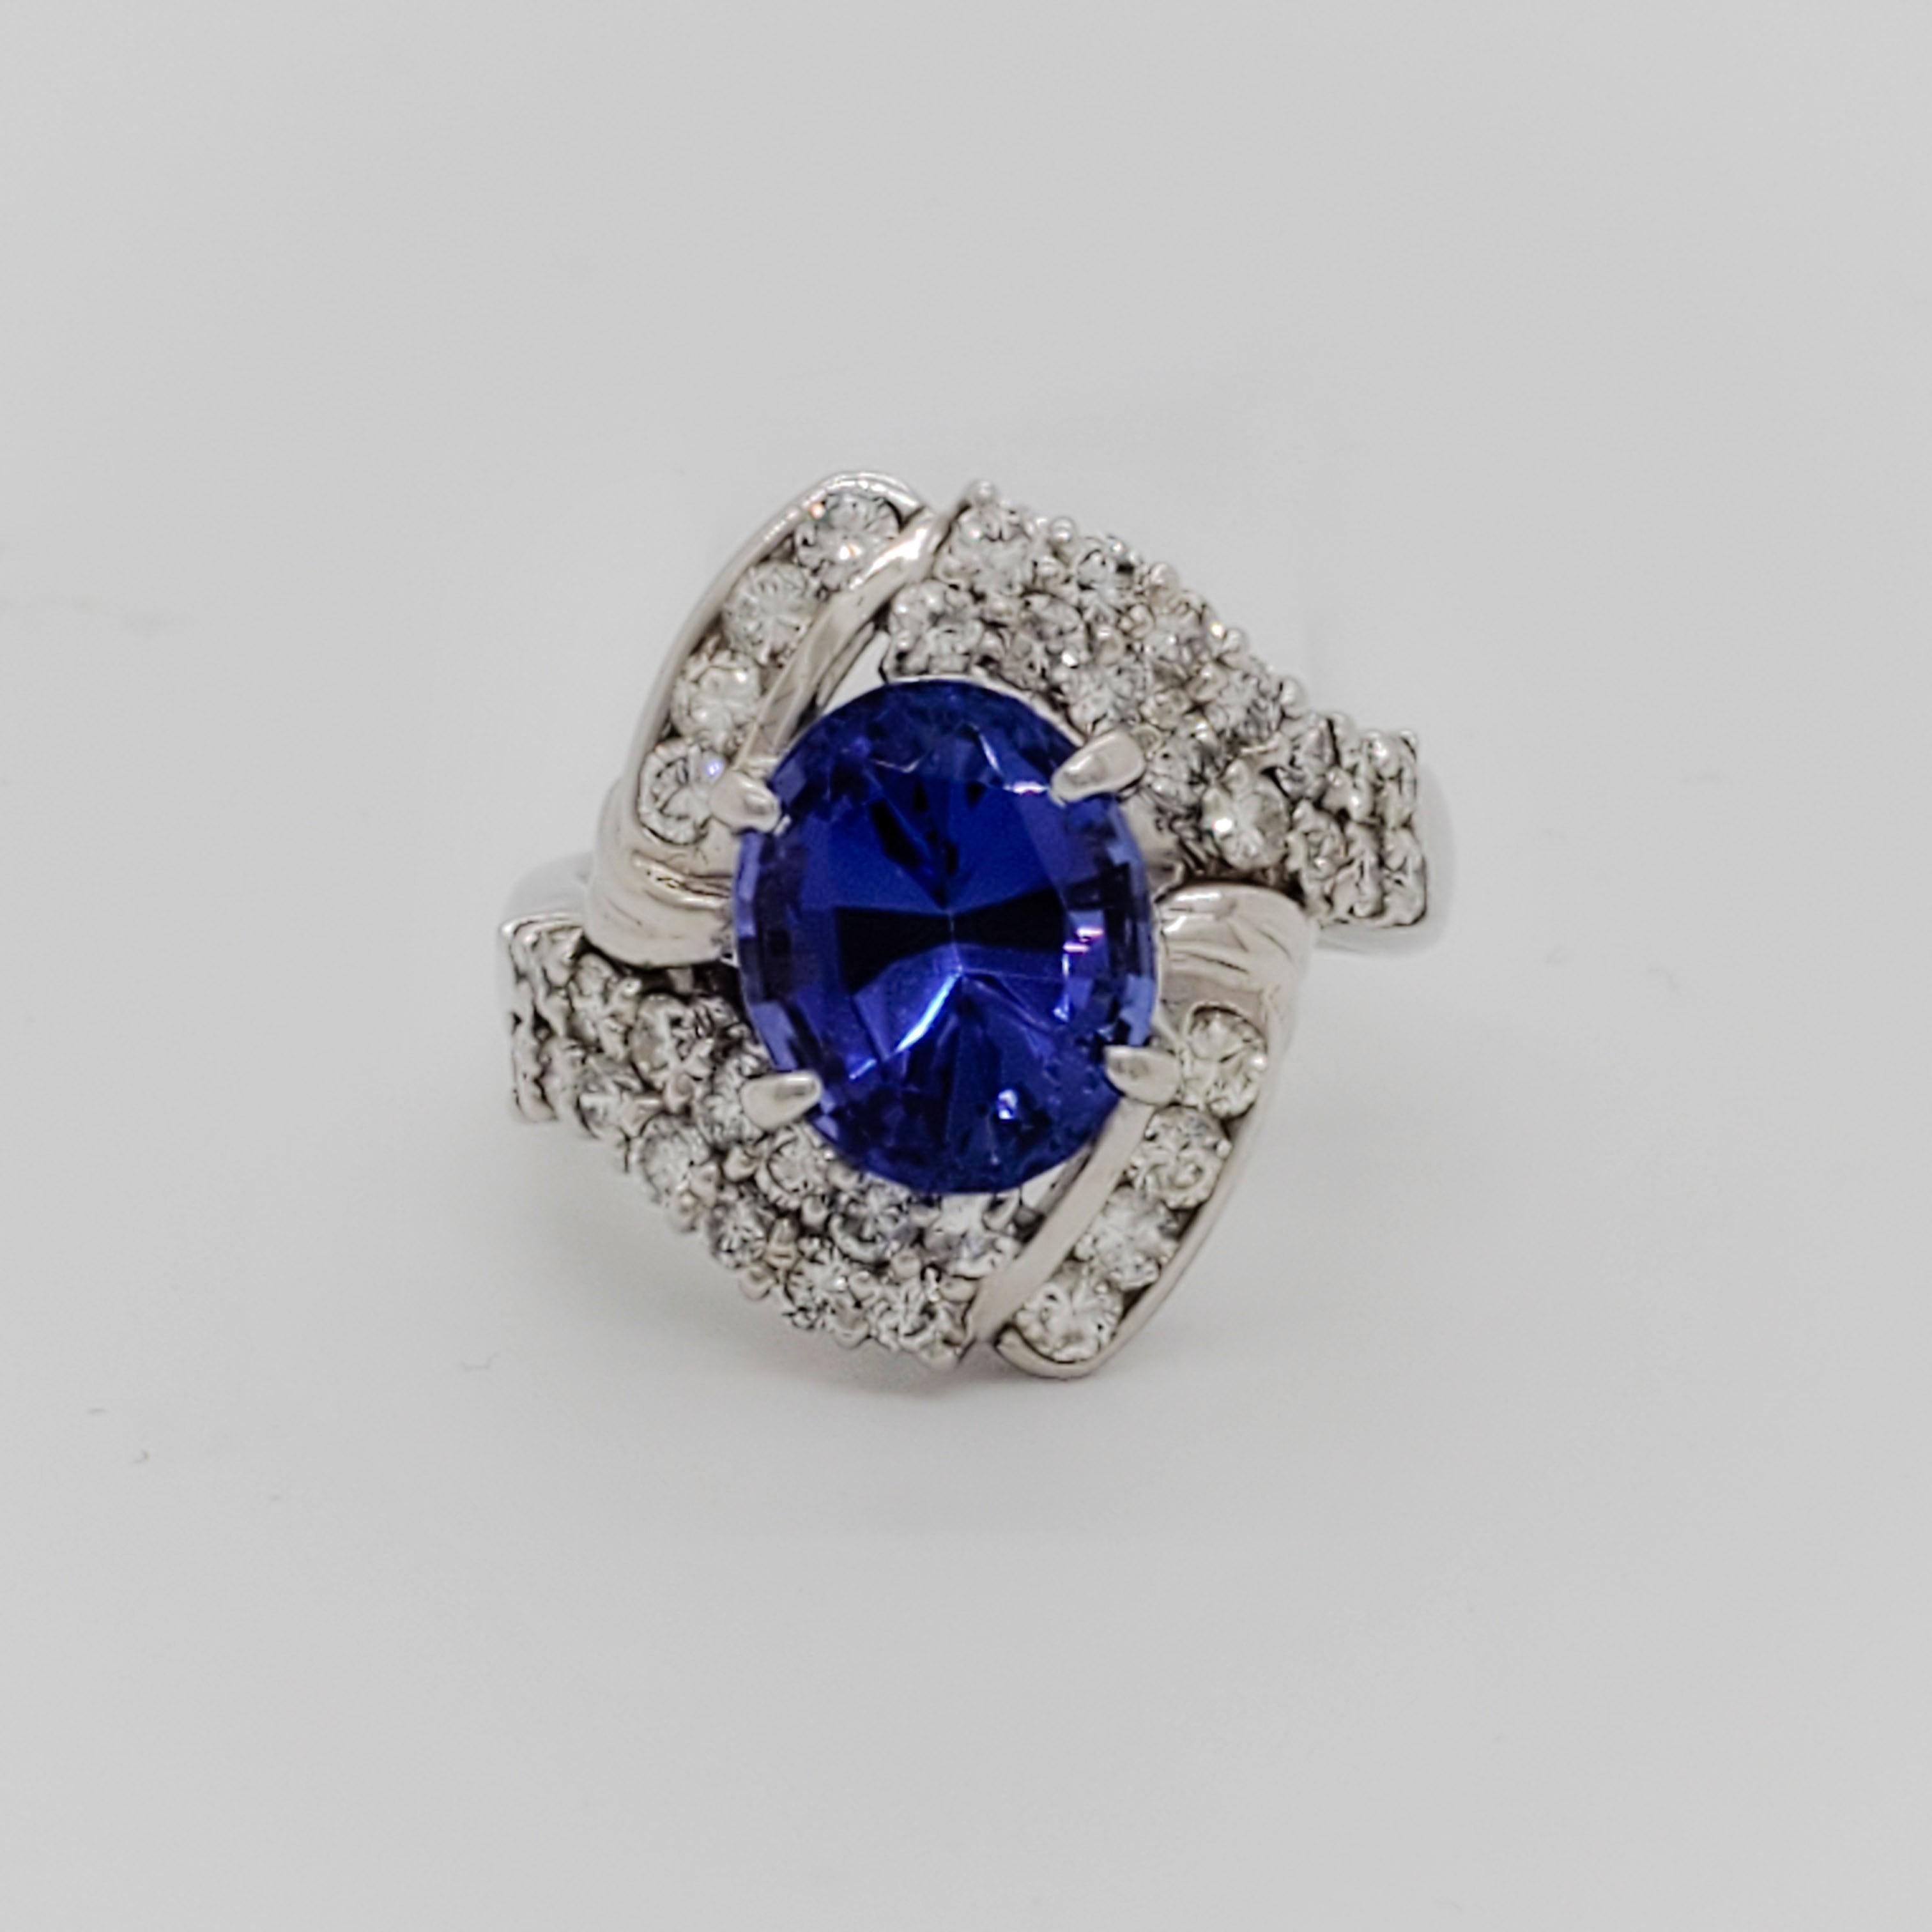 Wunderschönes ovales 4,90-karätiges Tansanit-Oval mit 1,32-karätigem, weißem und glänzendem Diamanten von guter Qualität.  Handgefertigt in Platin.  Ring Größe 6,5.